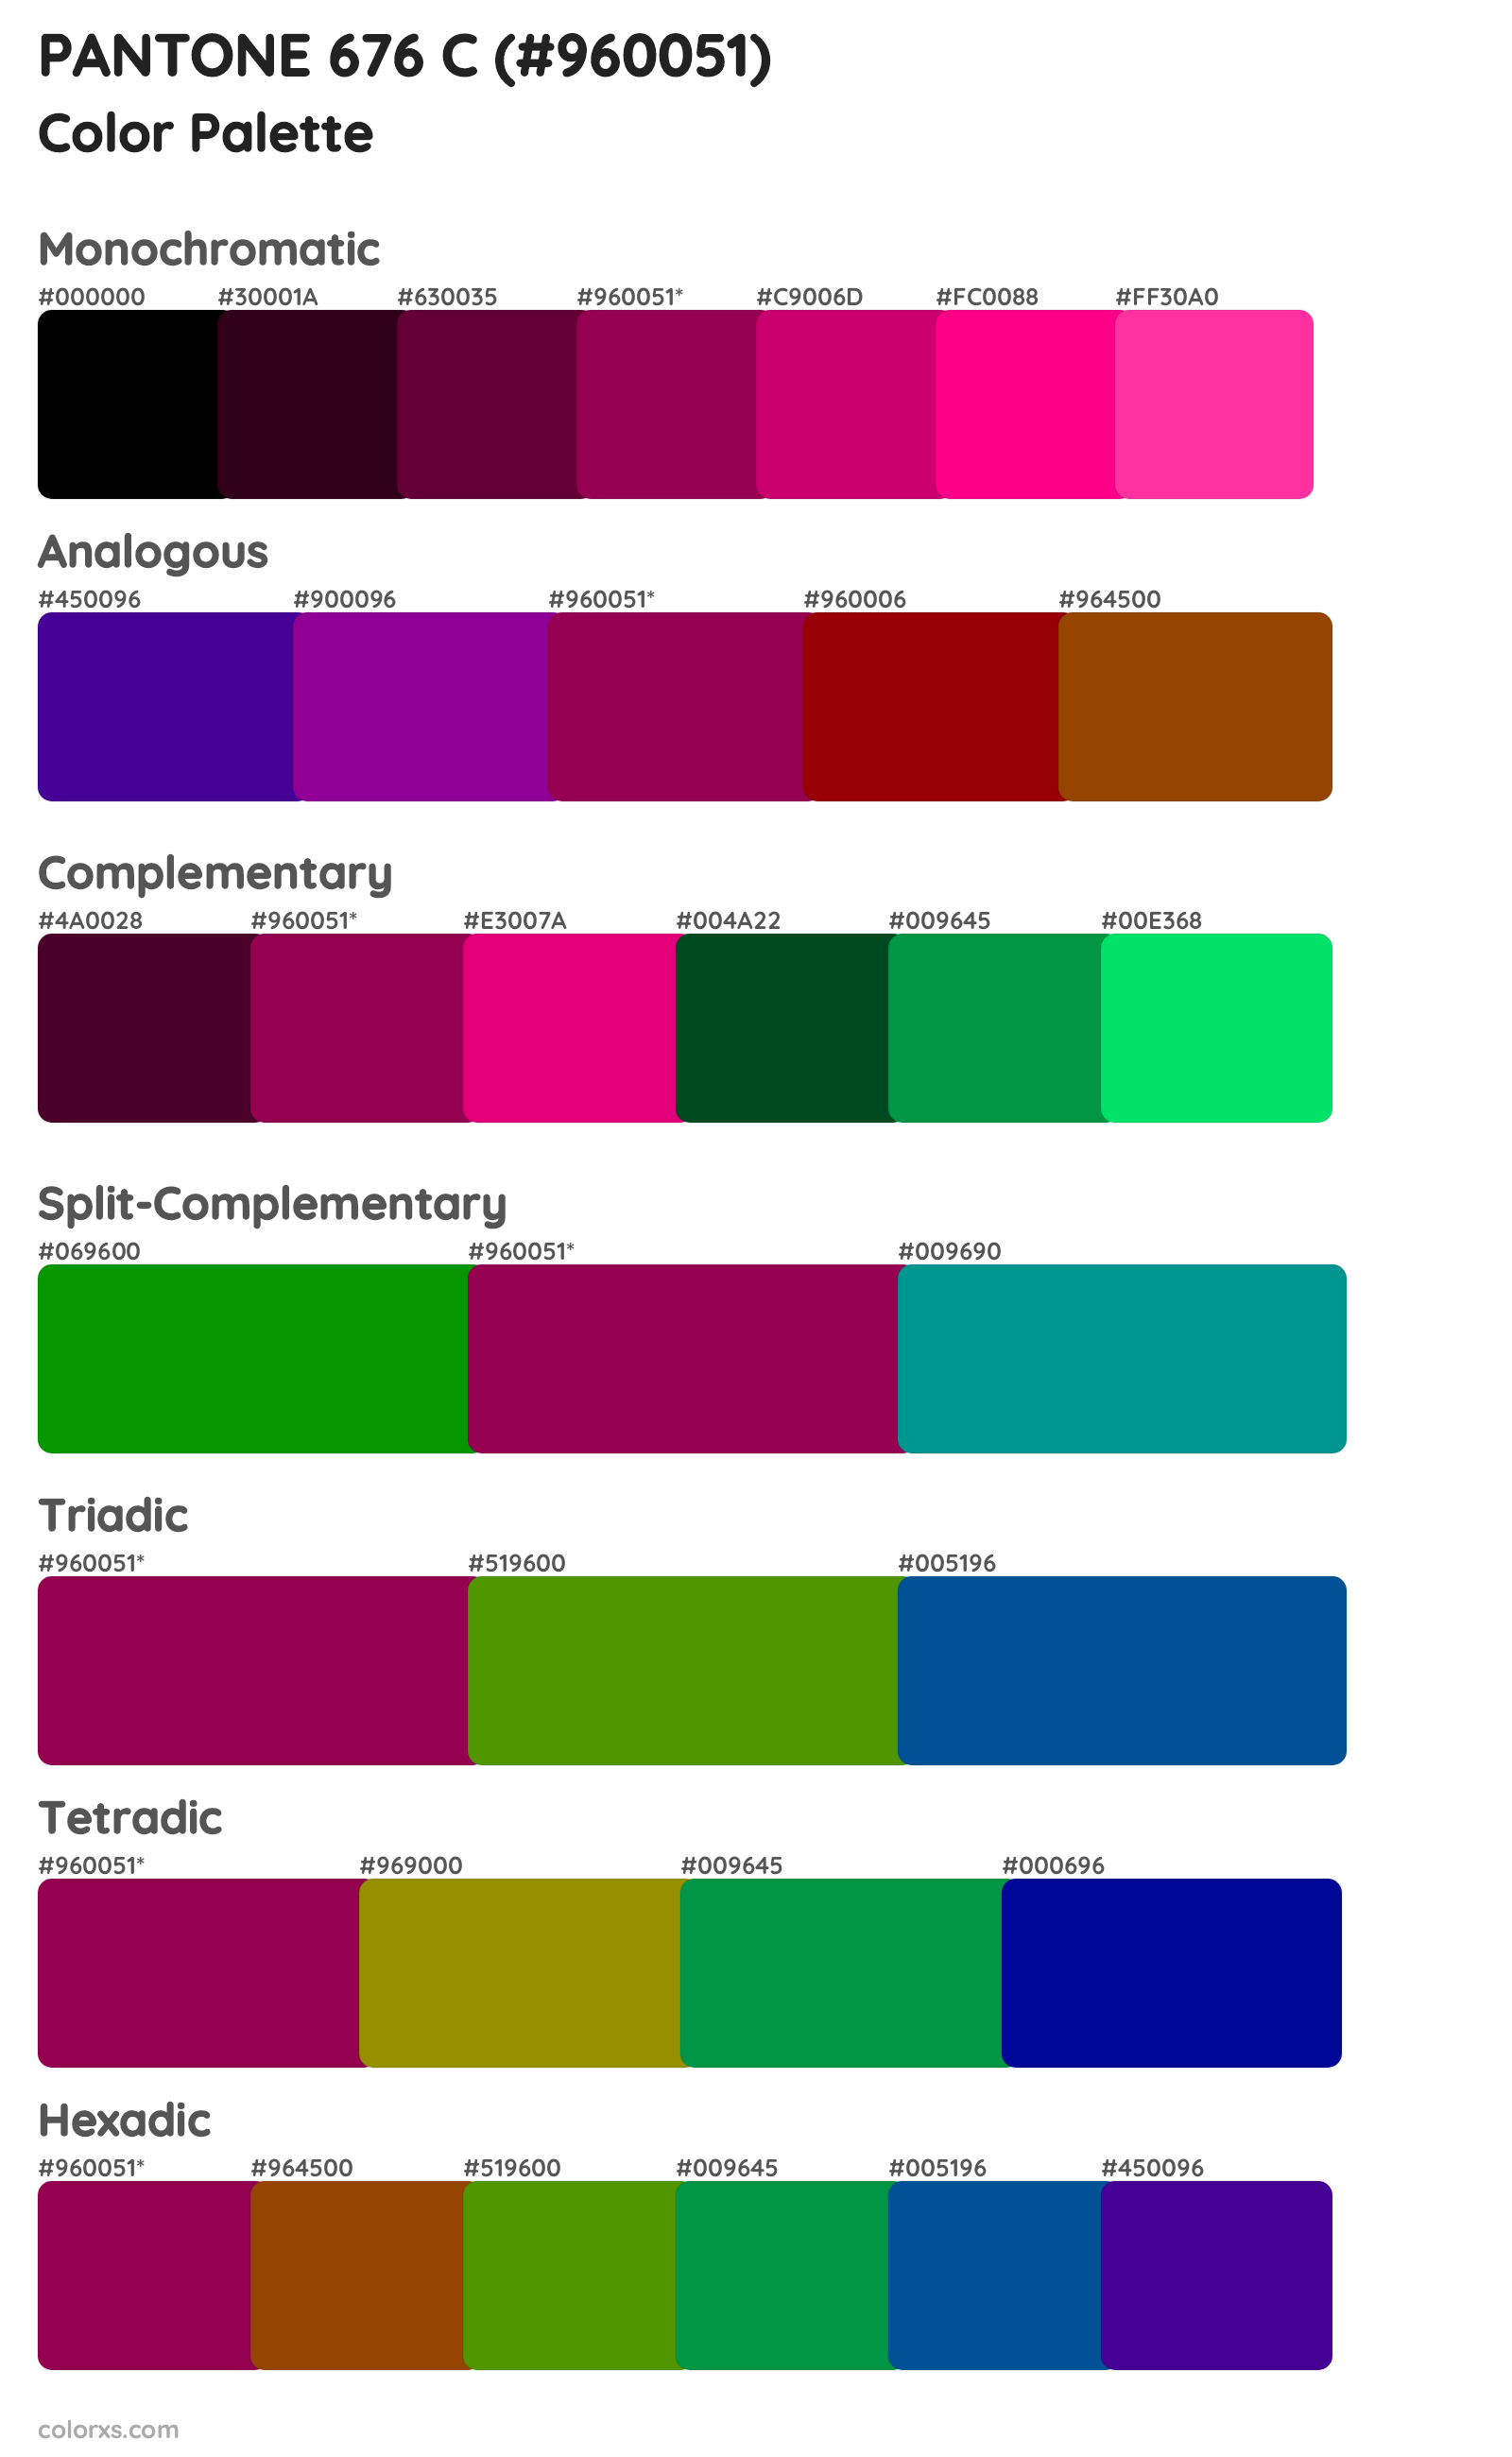 PANTONE 676 C Color Scheme Palettes